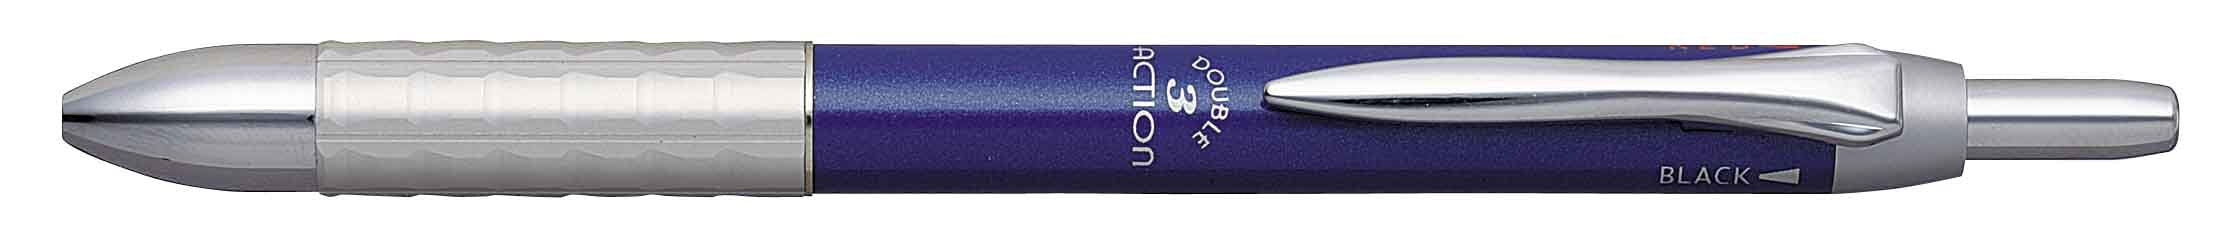 白金多功能鋼筆雙3動藍色機型Mwbk-3000#56